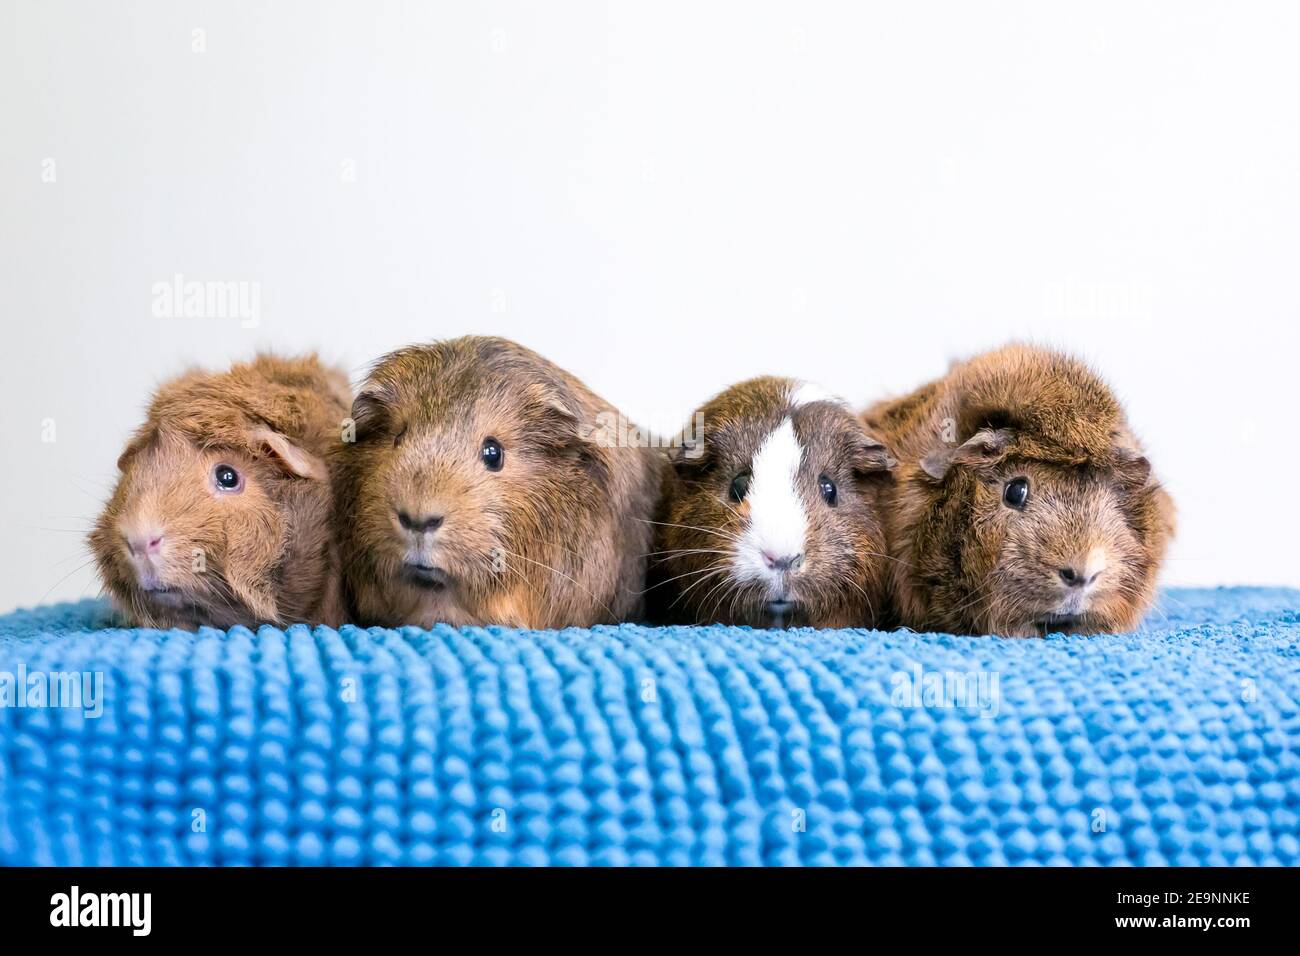 Un groupe de quatre cochons de Guinée d'animal de compagnie alignés une rangée sur une couverture bleue Banque D'Images